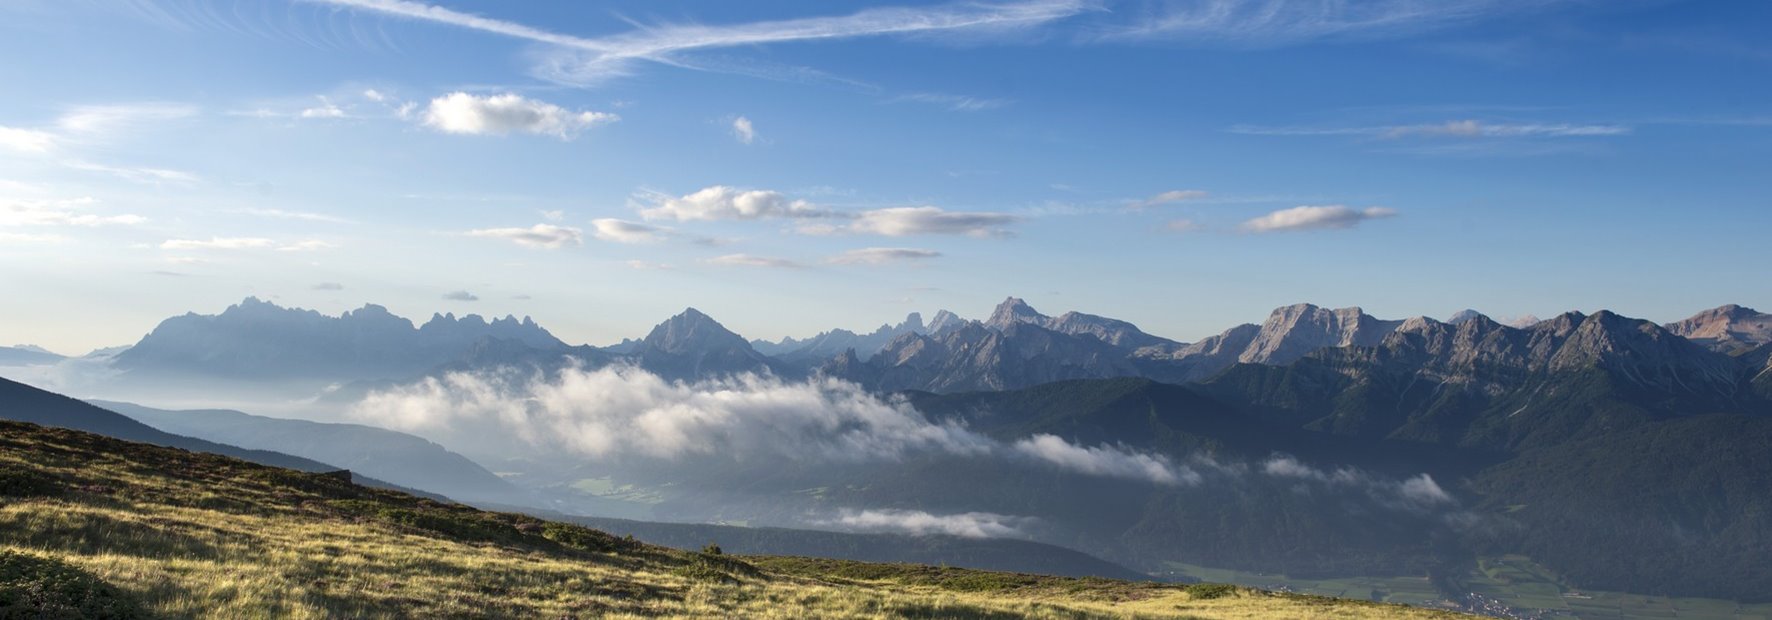 Zwischen Dolomiten & Rieserferner – wandern in einer einzigartigen Bergwelt